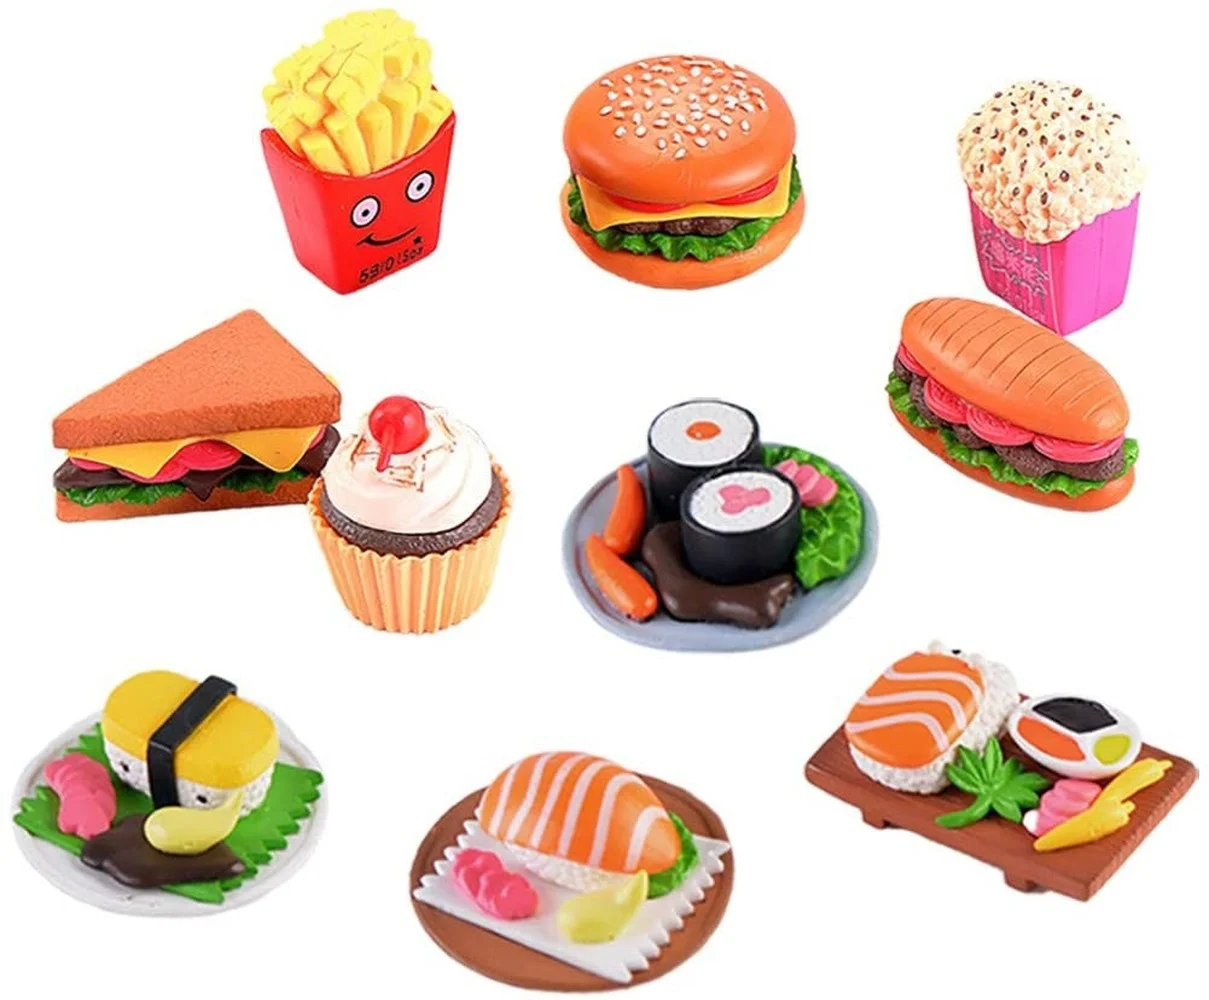 

10 шт. миниатюрные искусственные суши, игрушка для ролевых игр, Реалистичная поддельная модель гамбургера, фотография, реквизит, украшение д...